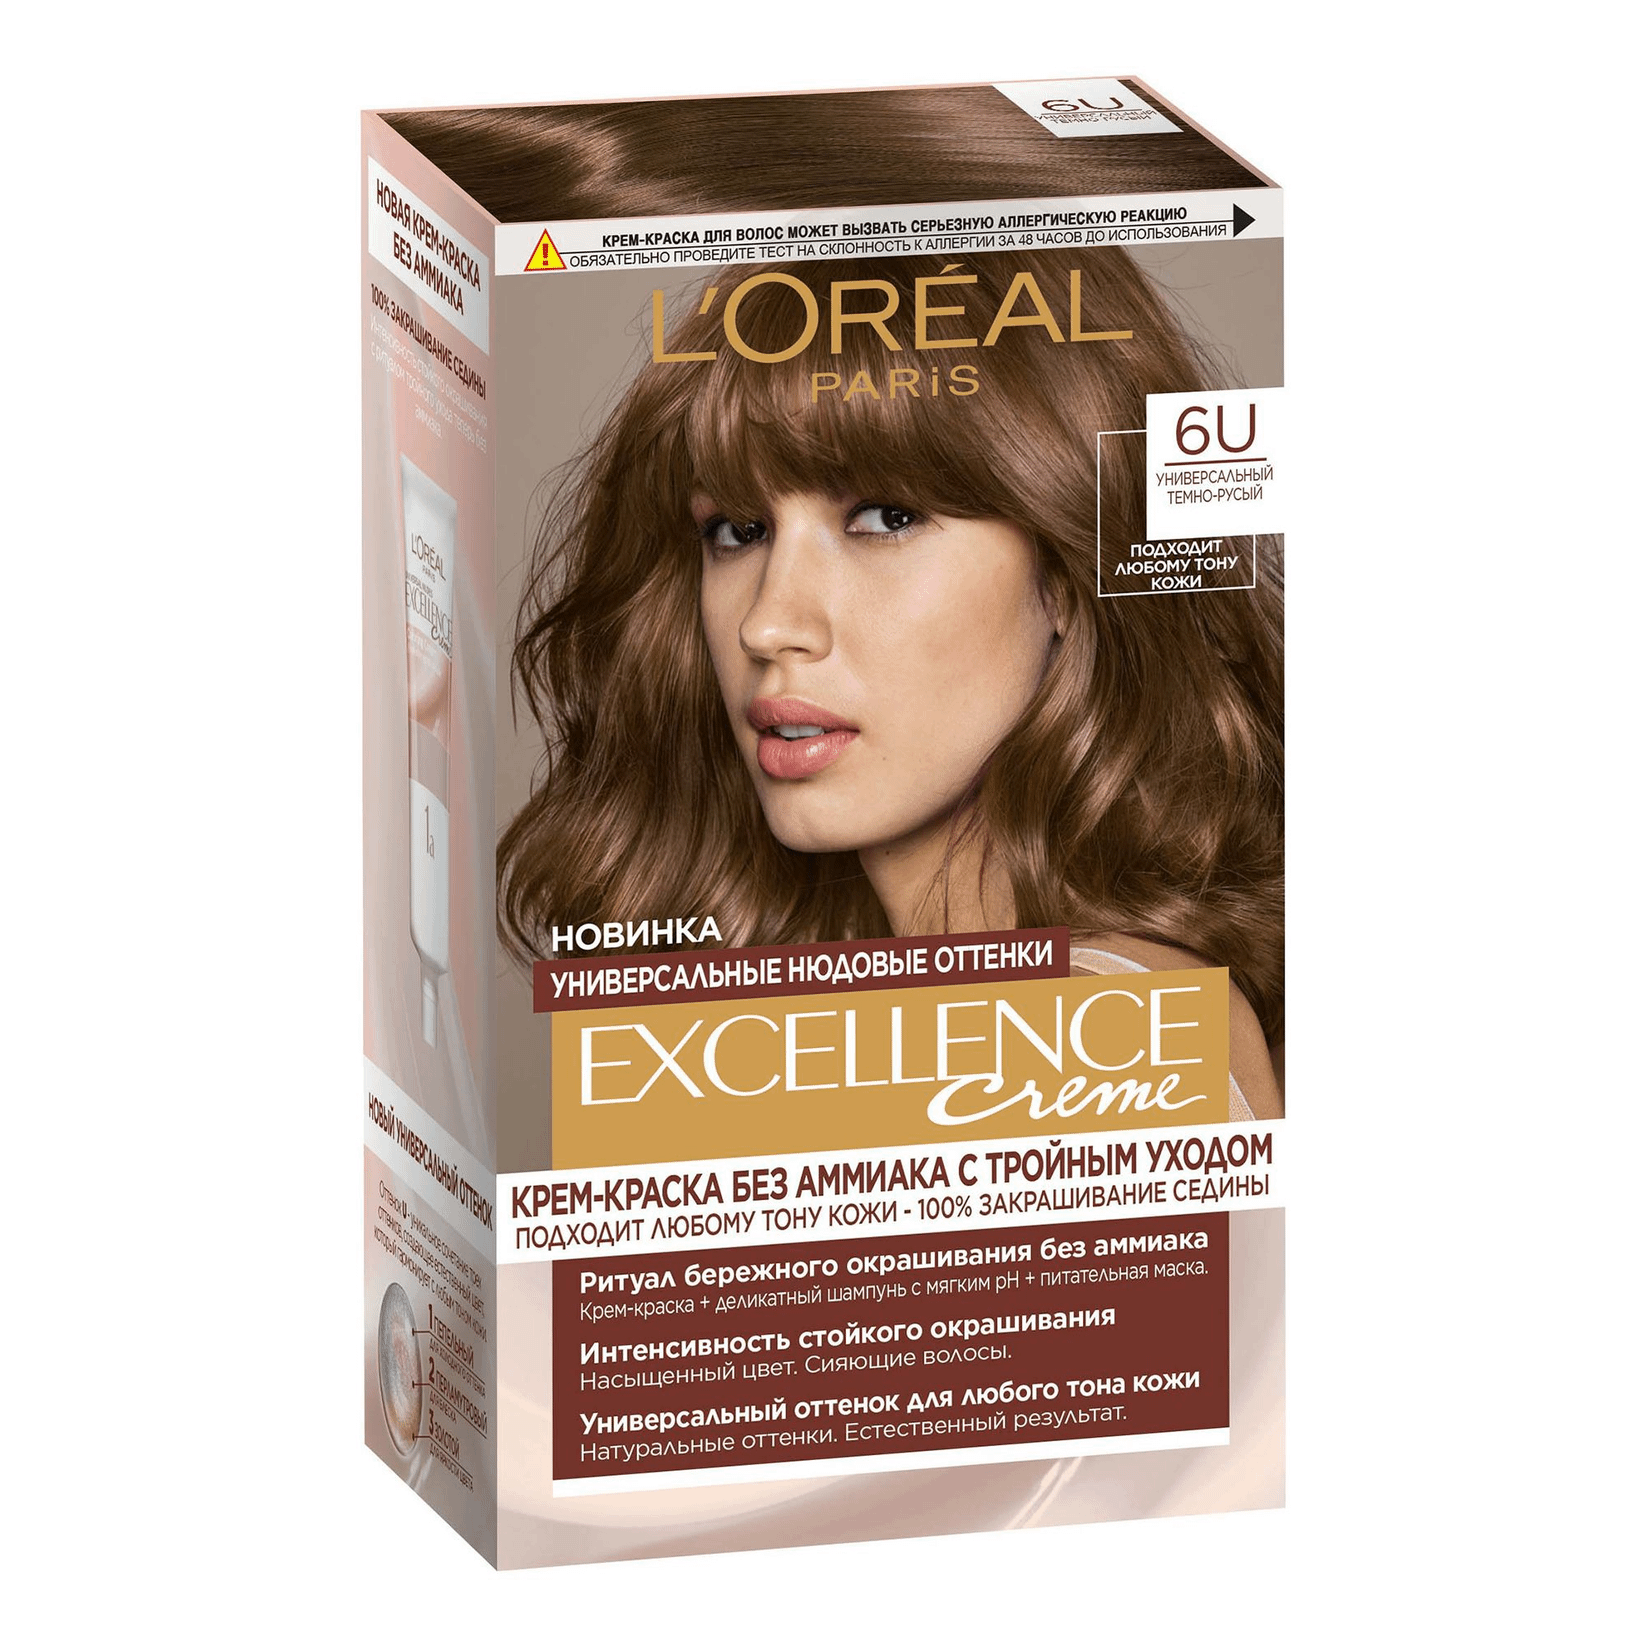 Крем-краска для волос L'Oreal Paris Excellence Creme оттенок 6U универсальный темно-русый the excellence dividend